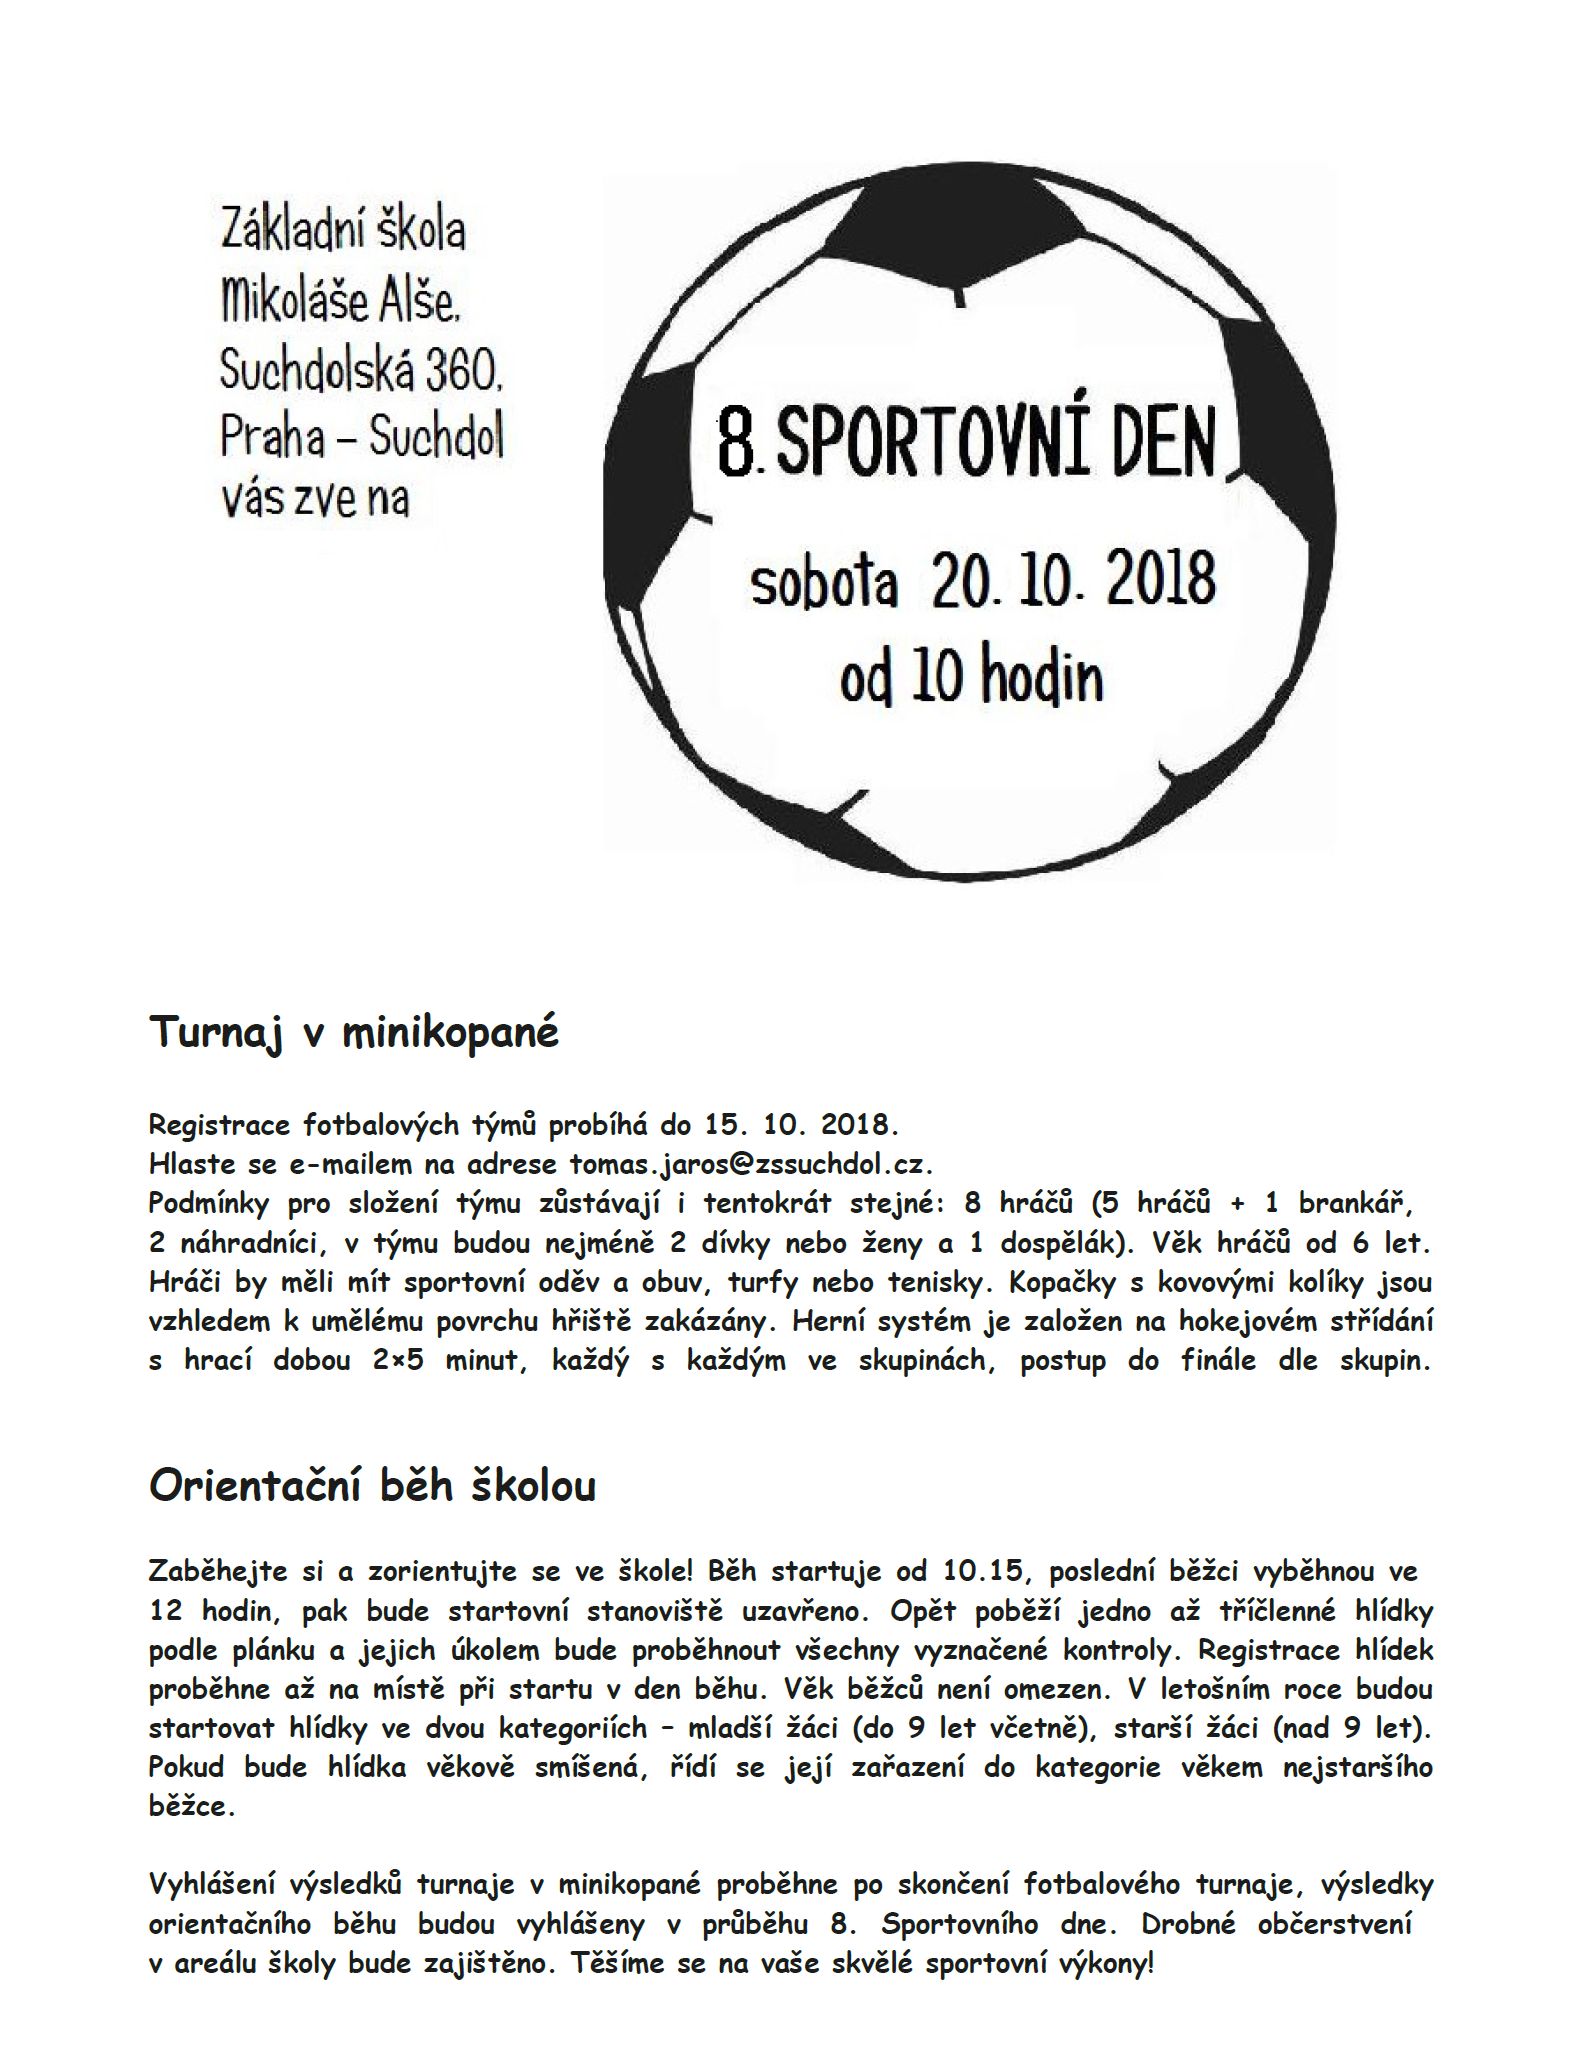 7. Sportovní den ZŠ M. Alše - 20.10.2018